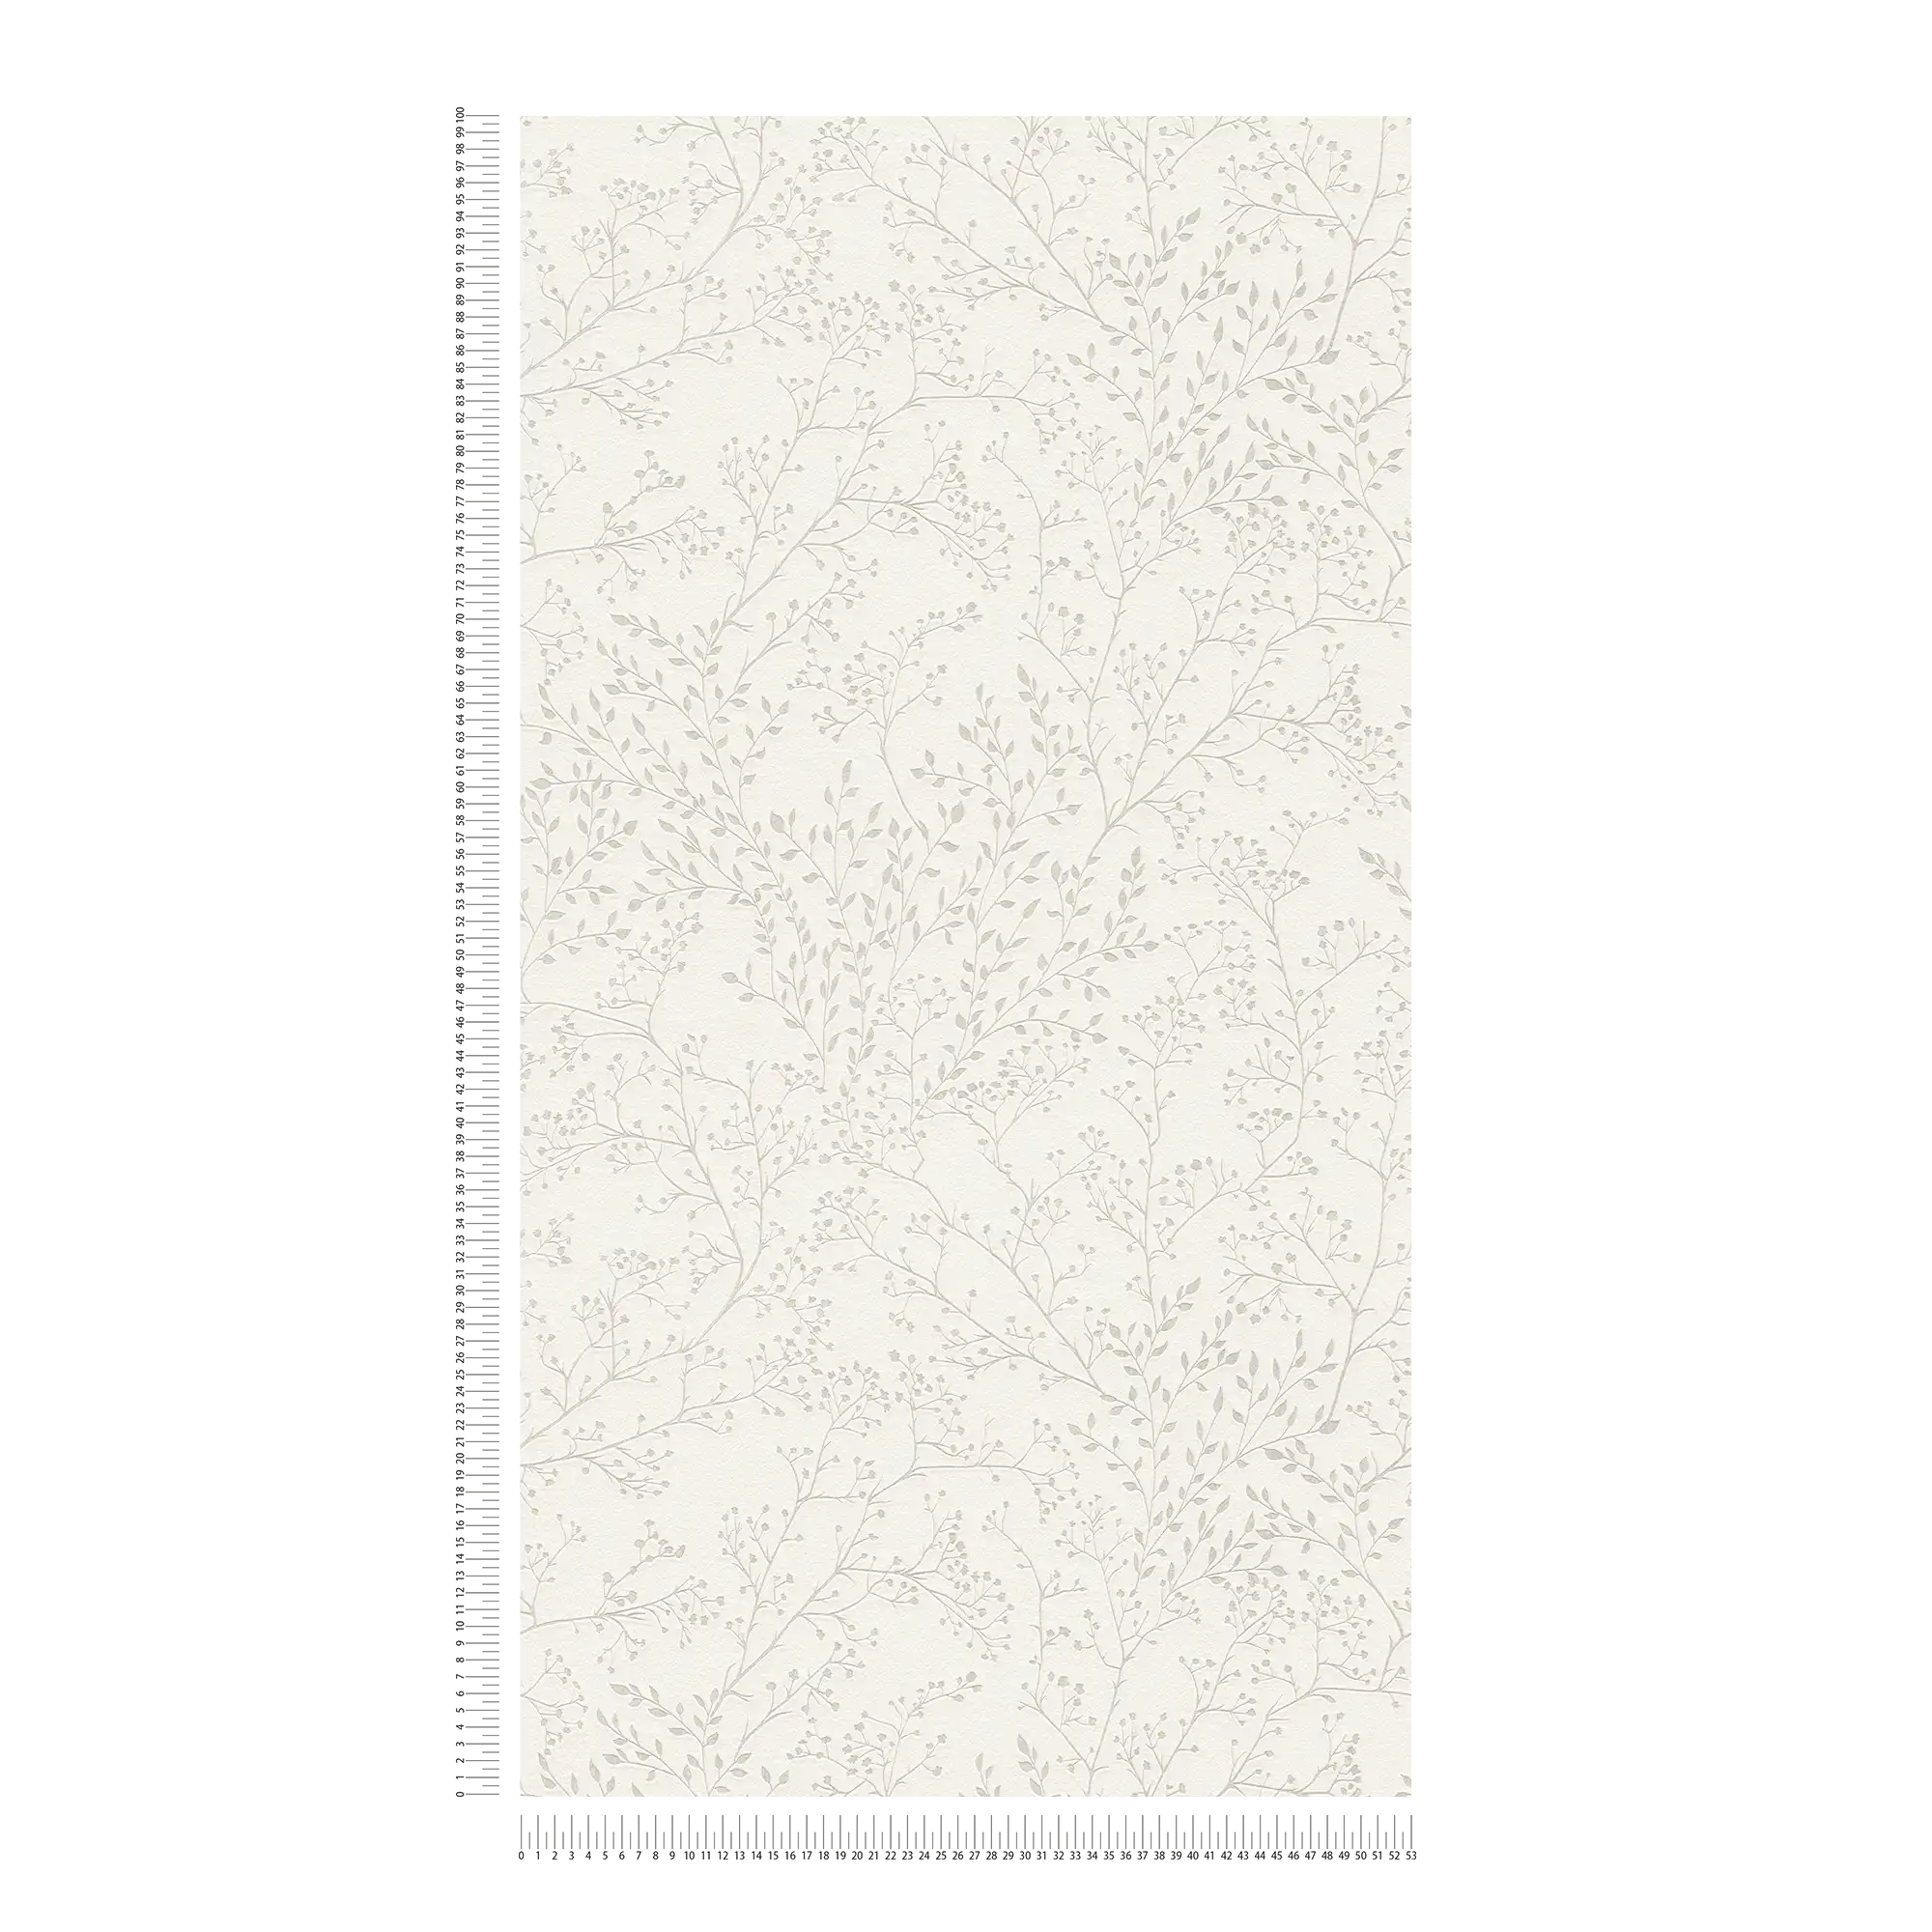             Einfarbige Tapete Cremeweiß mit Blätter Muster, Glanz & Struktureffekt
        